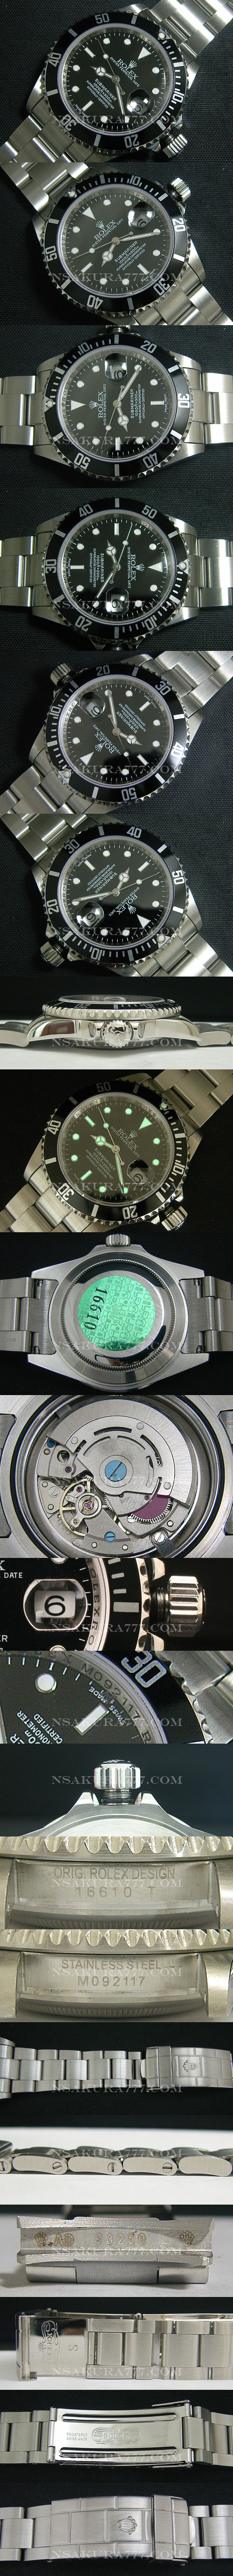 レプリカ時計ロレックス サブマリーナ Asian 21600振動 オートマティック(自動巻き) - ウインドウを閉じる